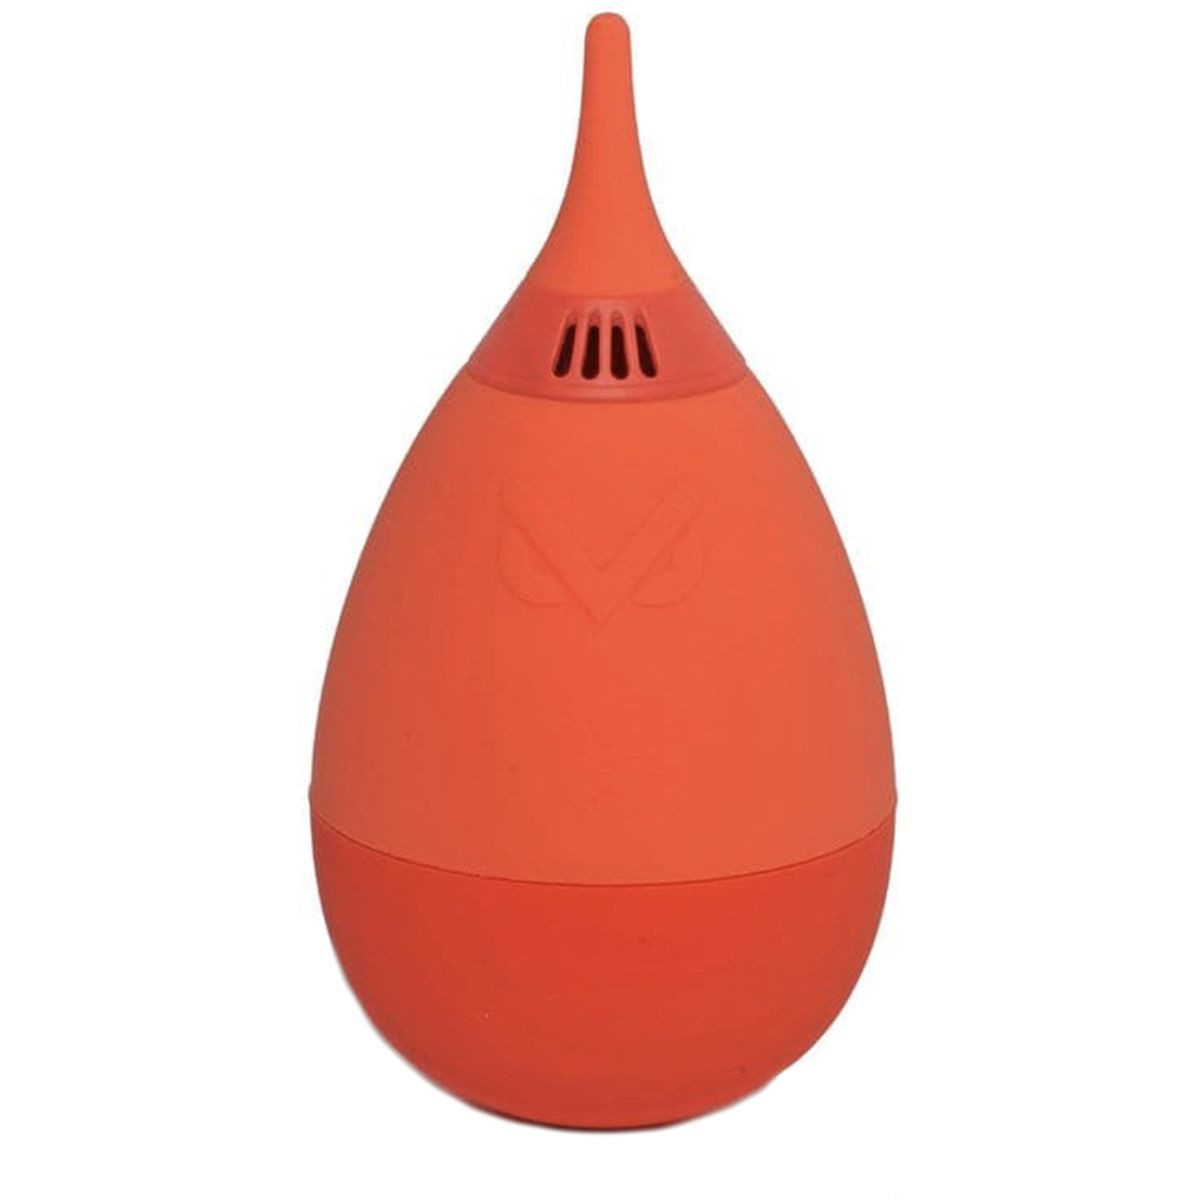 VSGO Imp Air Blower (Orange)